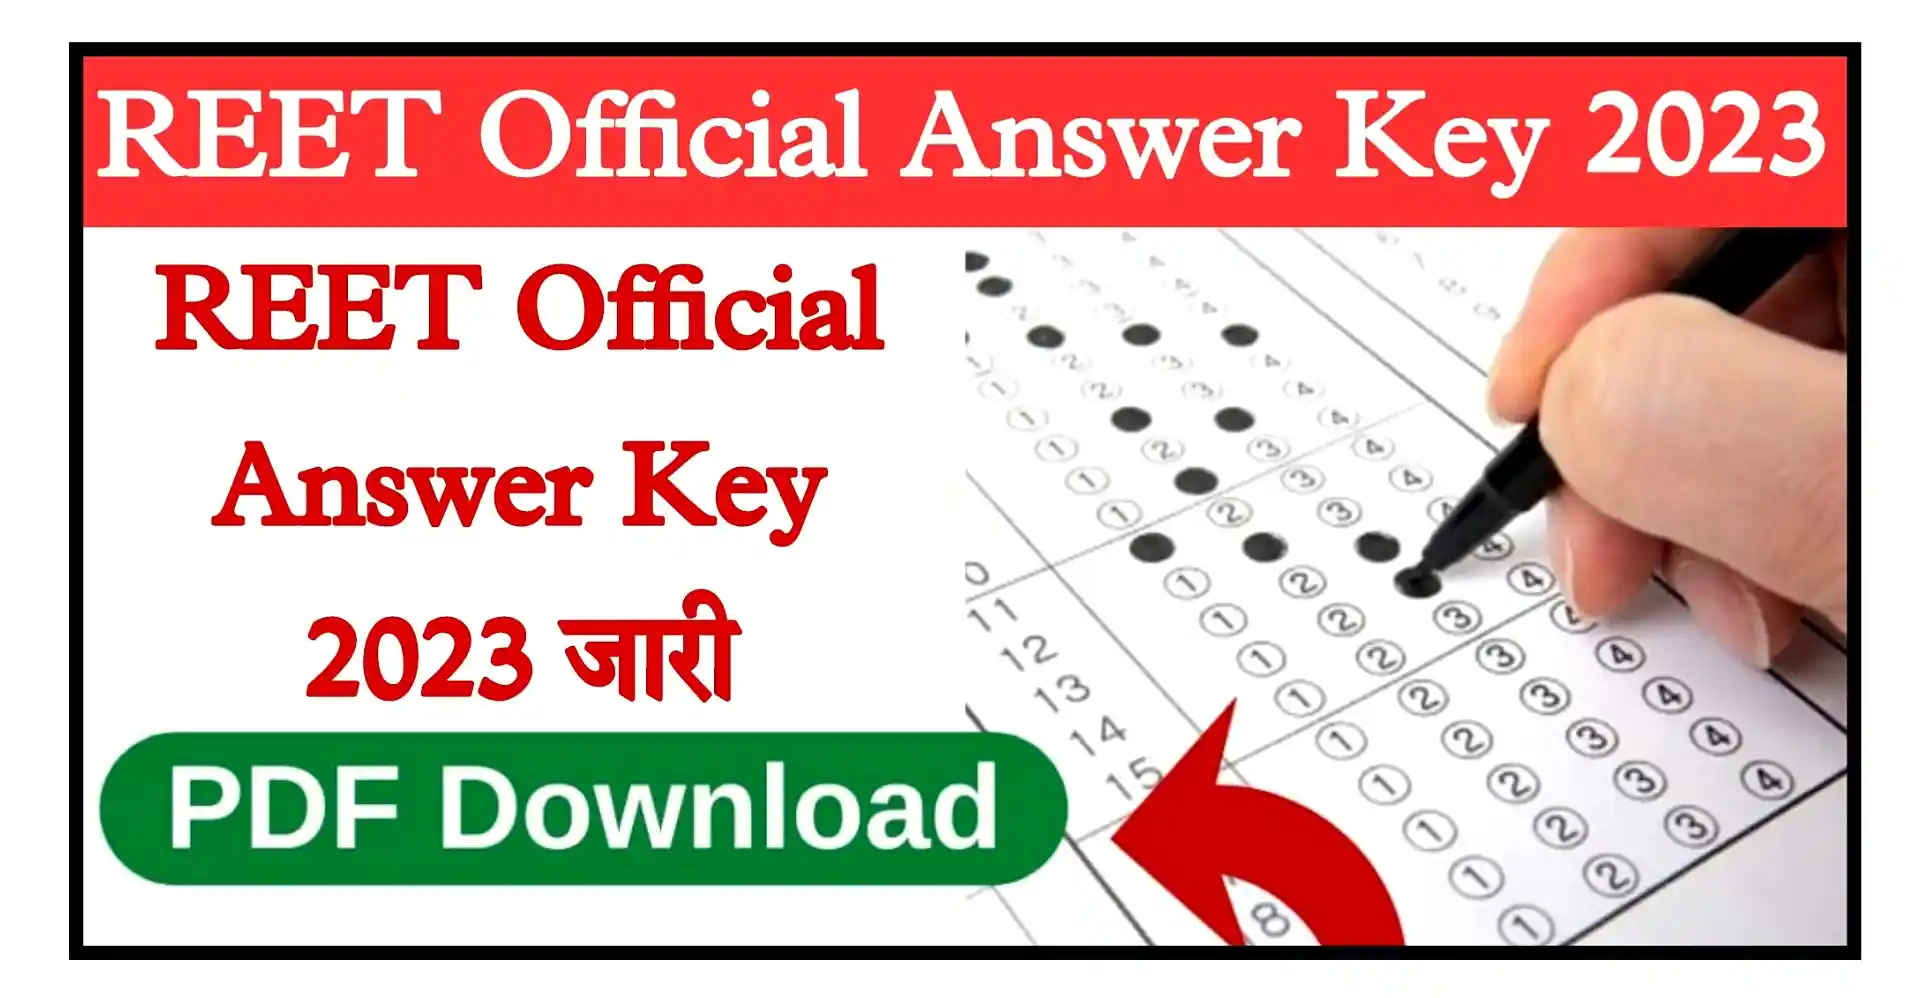 REET Mains Official Answer Key 2023 रीट मुख्य परीक्षा ऑफिशियल आंसर की जारी, यहां से PDF डाउनलोड करें